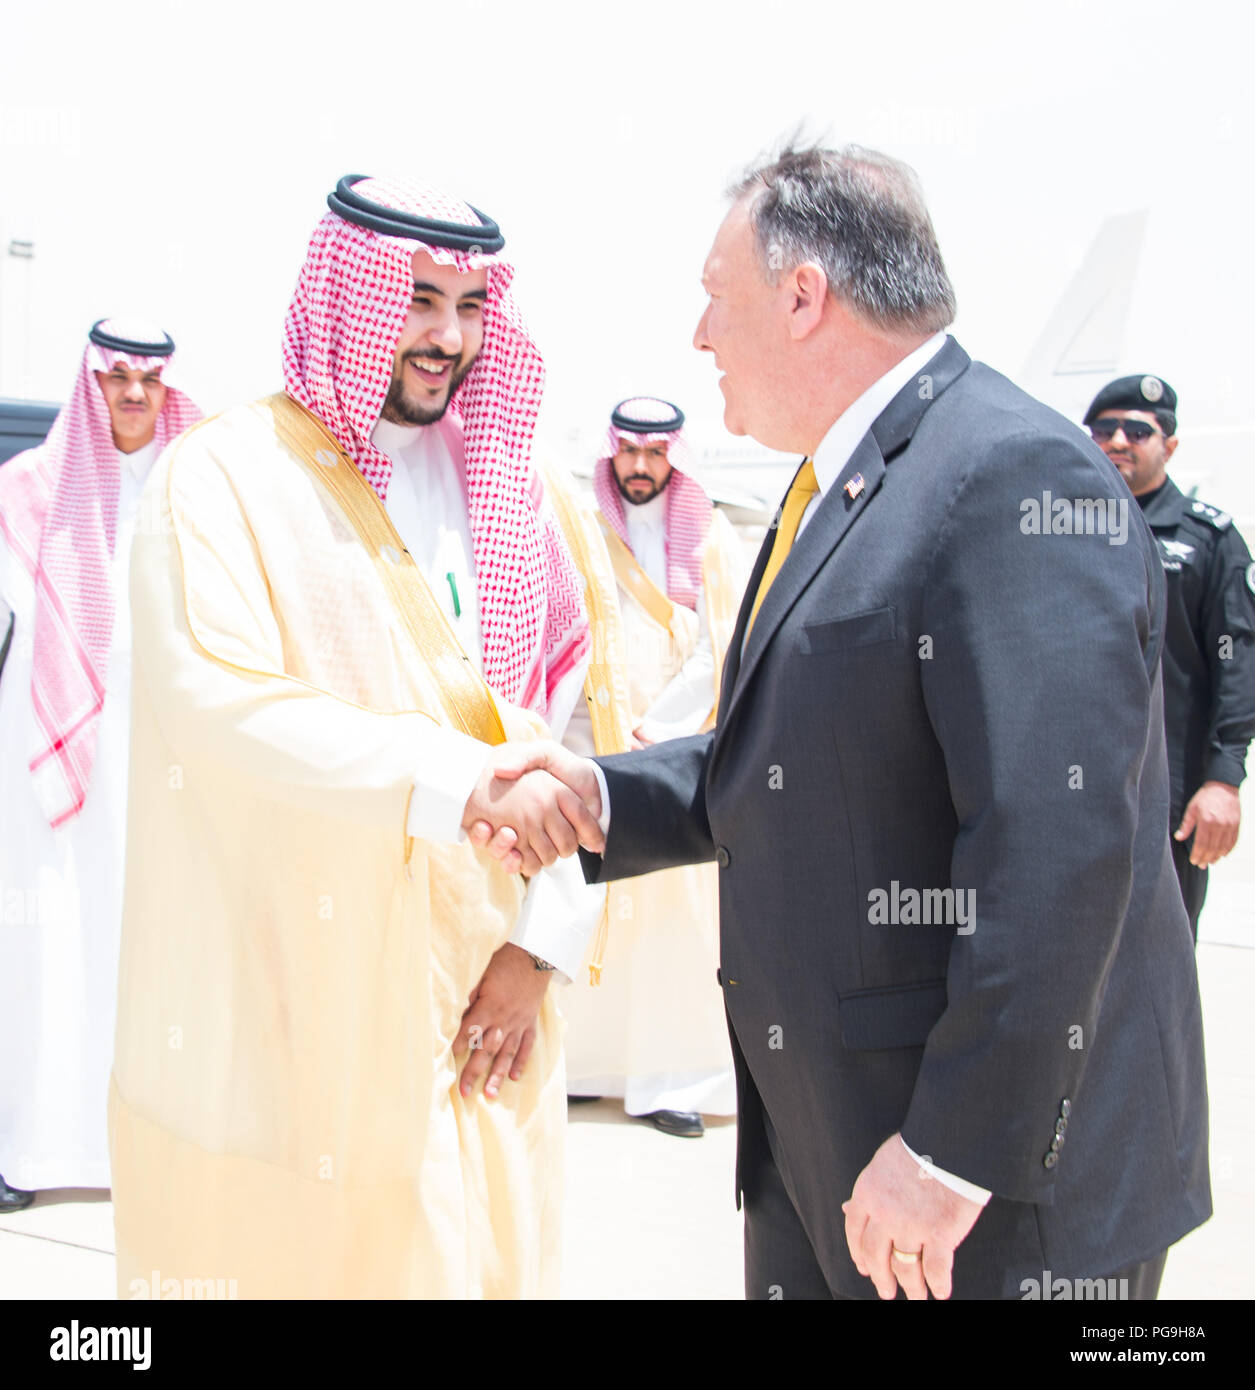 La secrétaire d'État des États-Unis, Mike Pompeo dit adieu à l'ambassadeur saoudien aux États-Unis Arabie ambassadeur aux États-Unis Khalid bin Salman qu'il quitte Riyadh, Arabie saoudite le 29 avril 2018 après des réunions avec des représentants du gouvernement saoudien. Banque D'Images